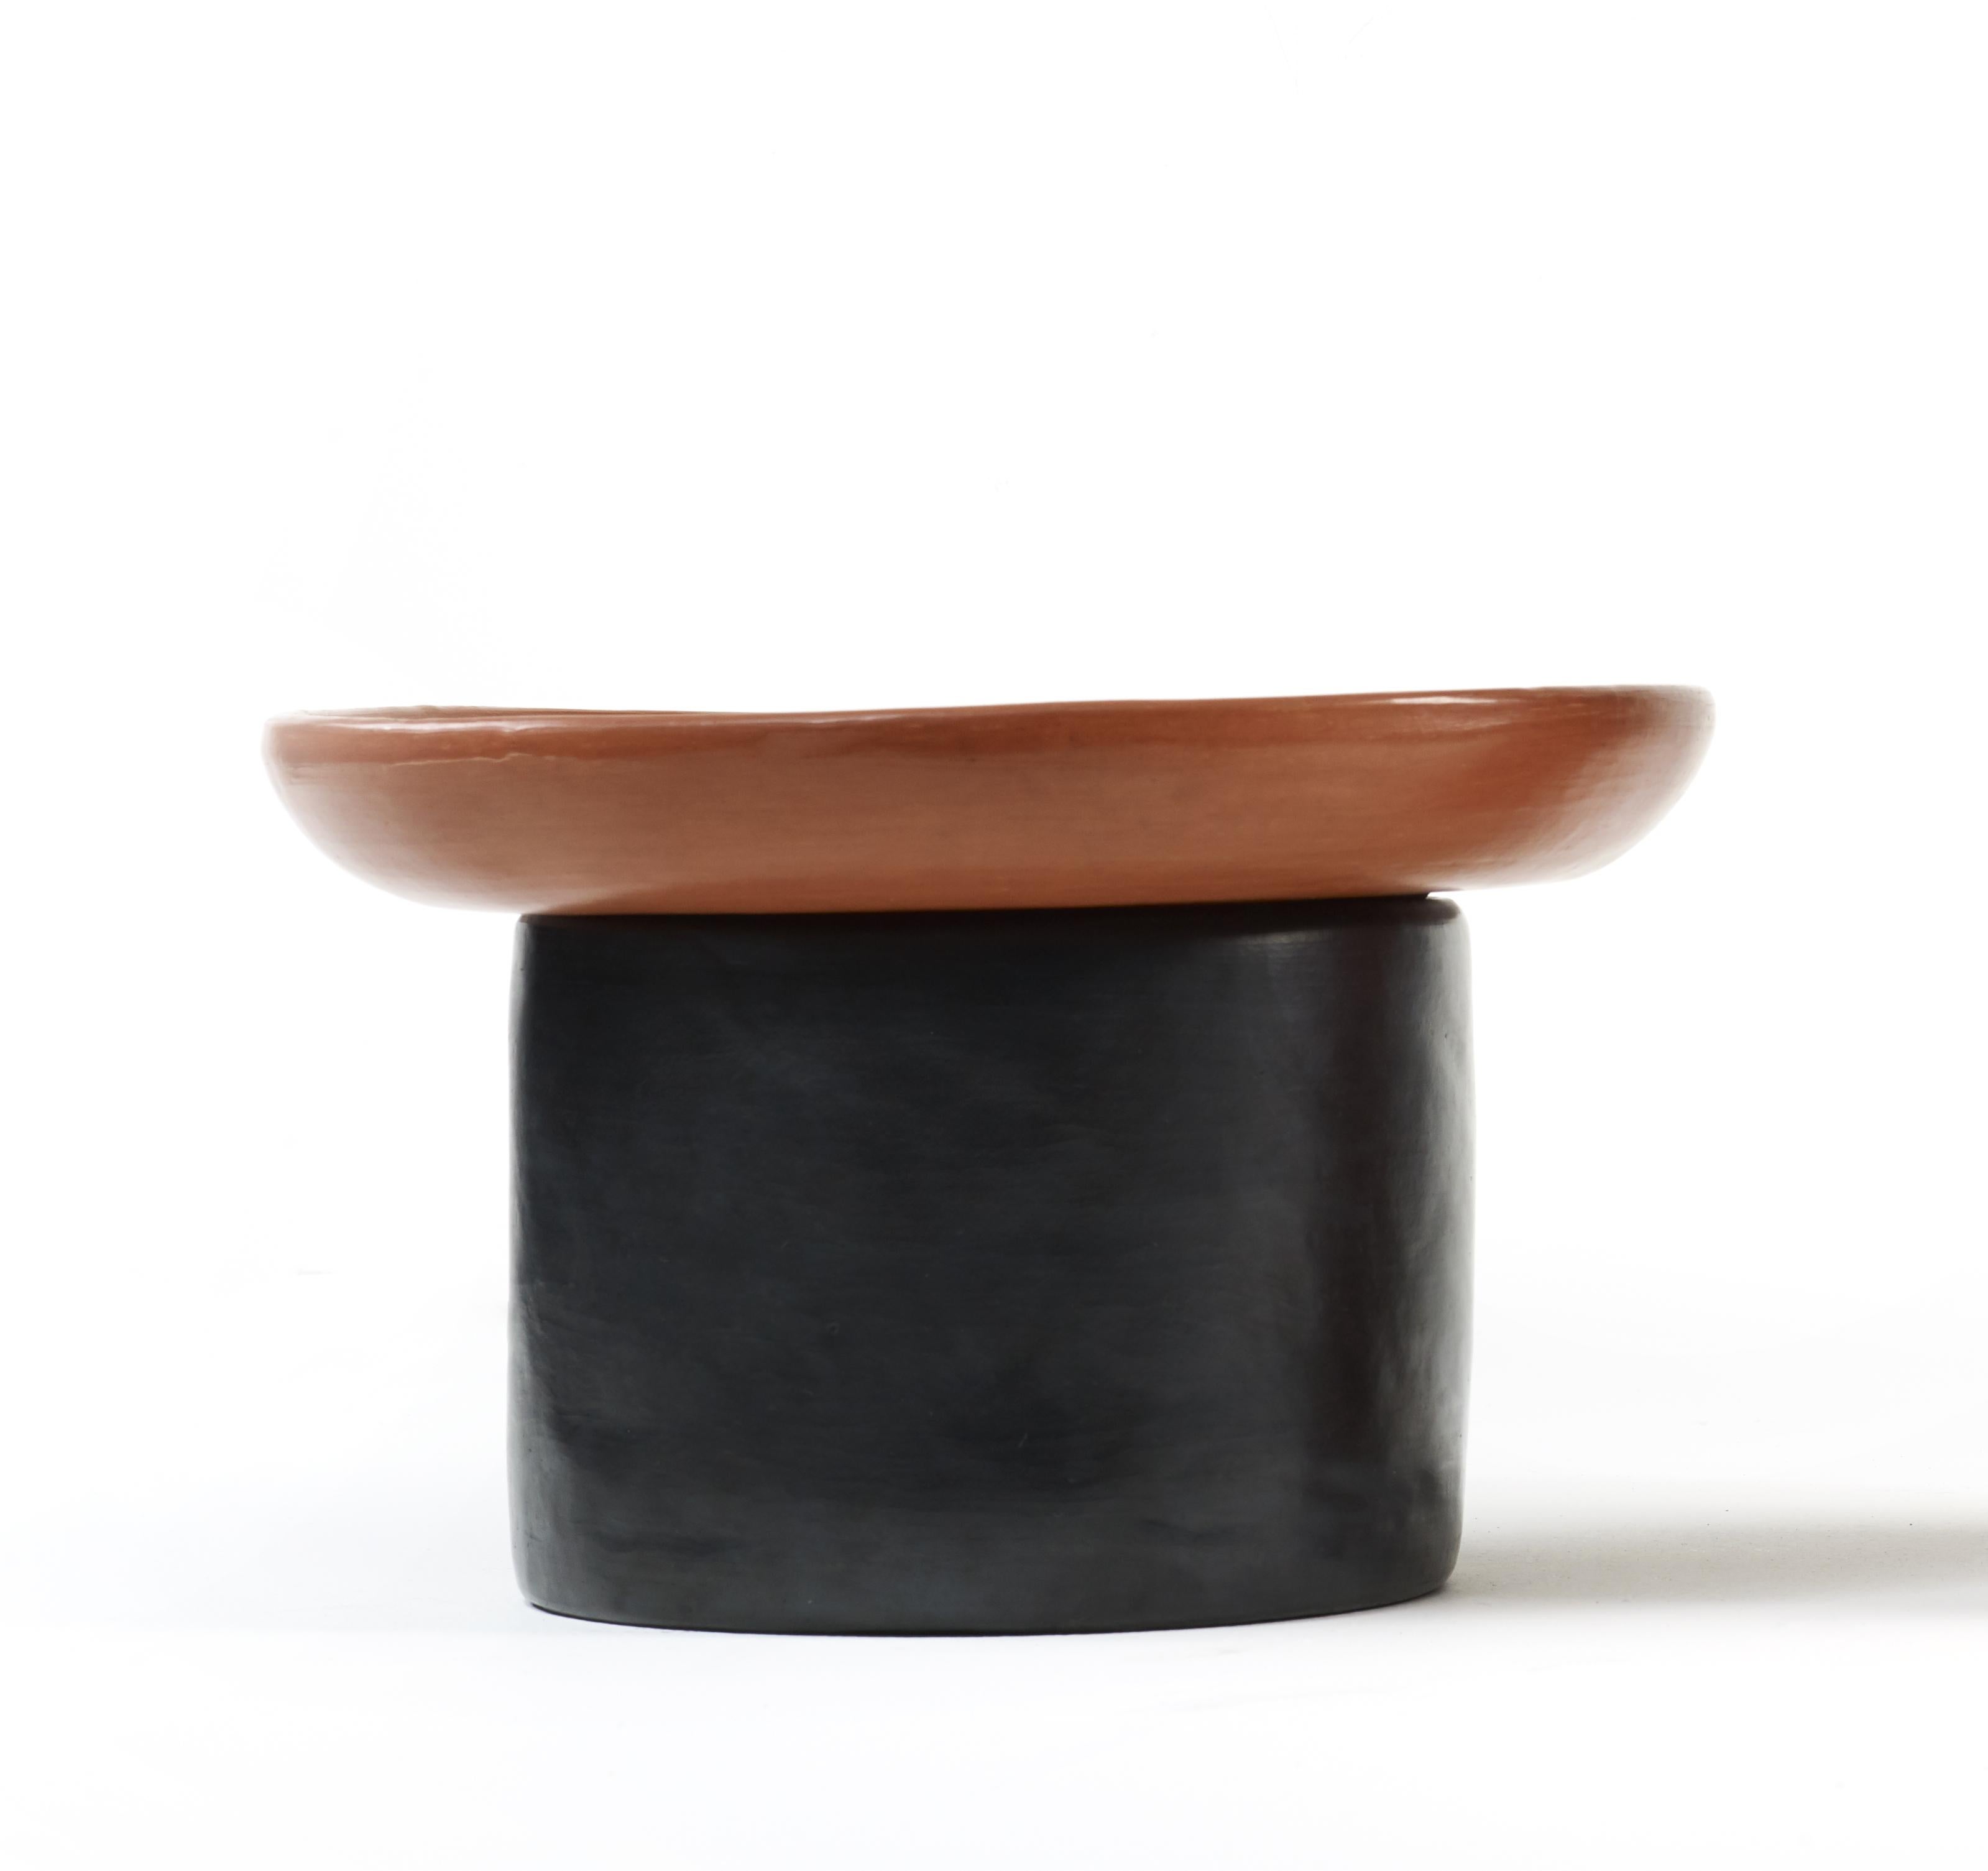 Schwarz/roter kleiner nuna beistelltisch von Sebastian Herkner
MATERIALIEN: Hitzebeständige schwarze und rote Keramik. 
Technik: Glasiert. Im Ofen gegart und mit Halbedelsteinen poliert.
Abmessungen: Durchmesser 42 cm x Höhe 23 cm 
Erhältlich in den